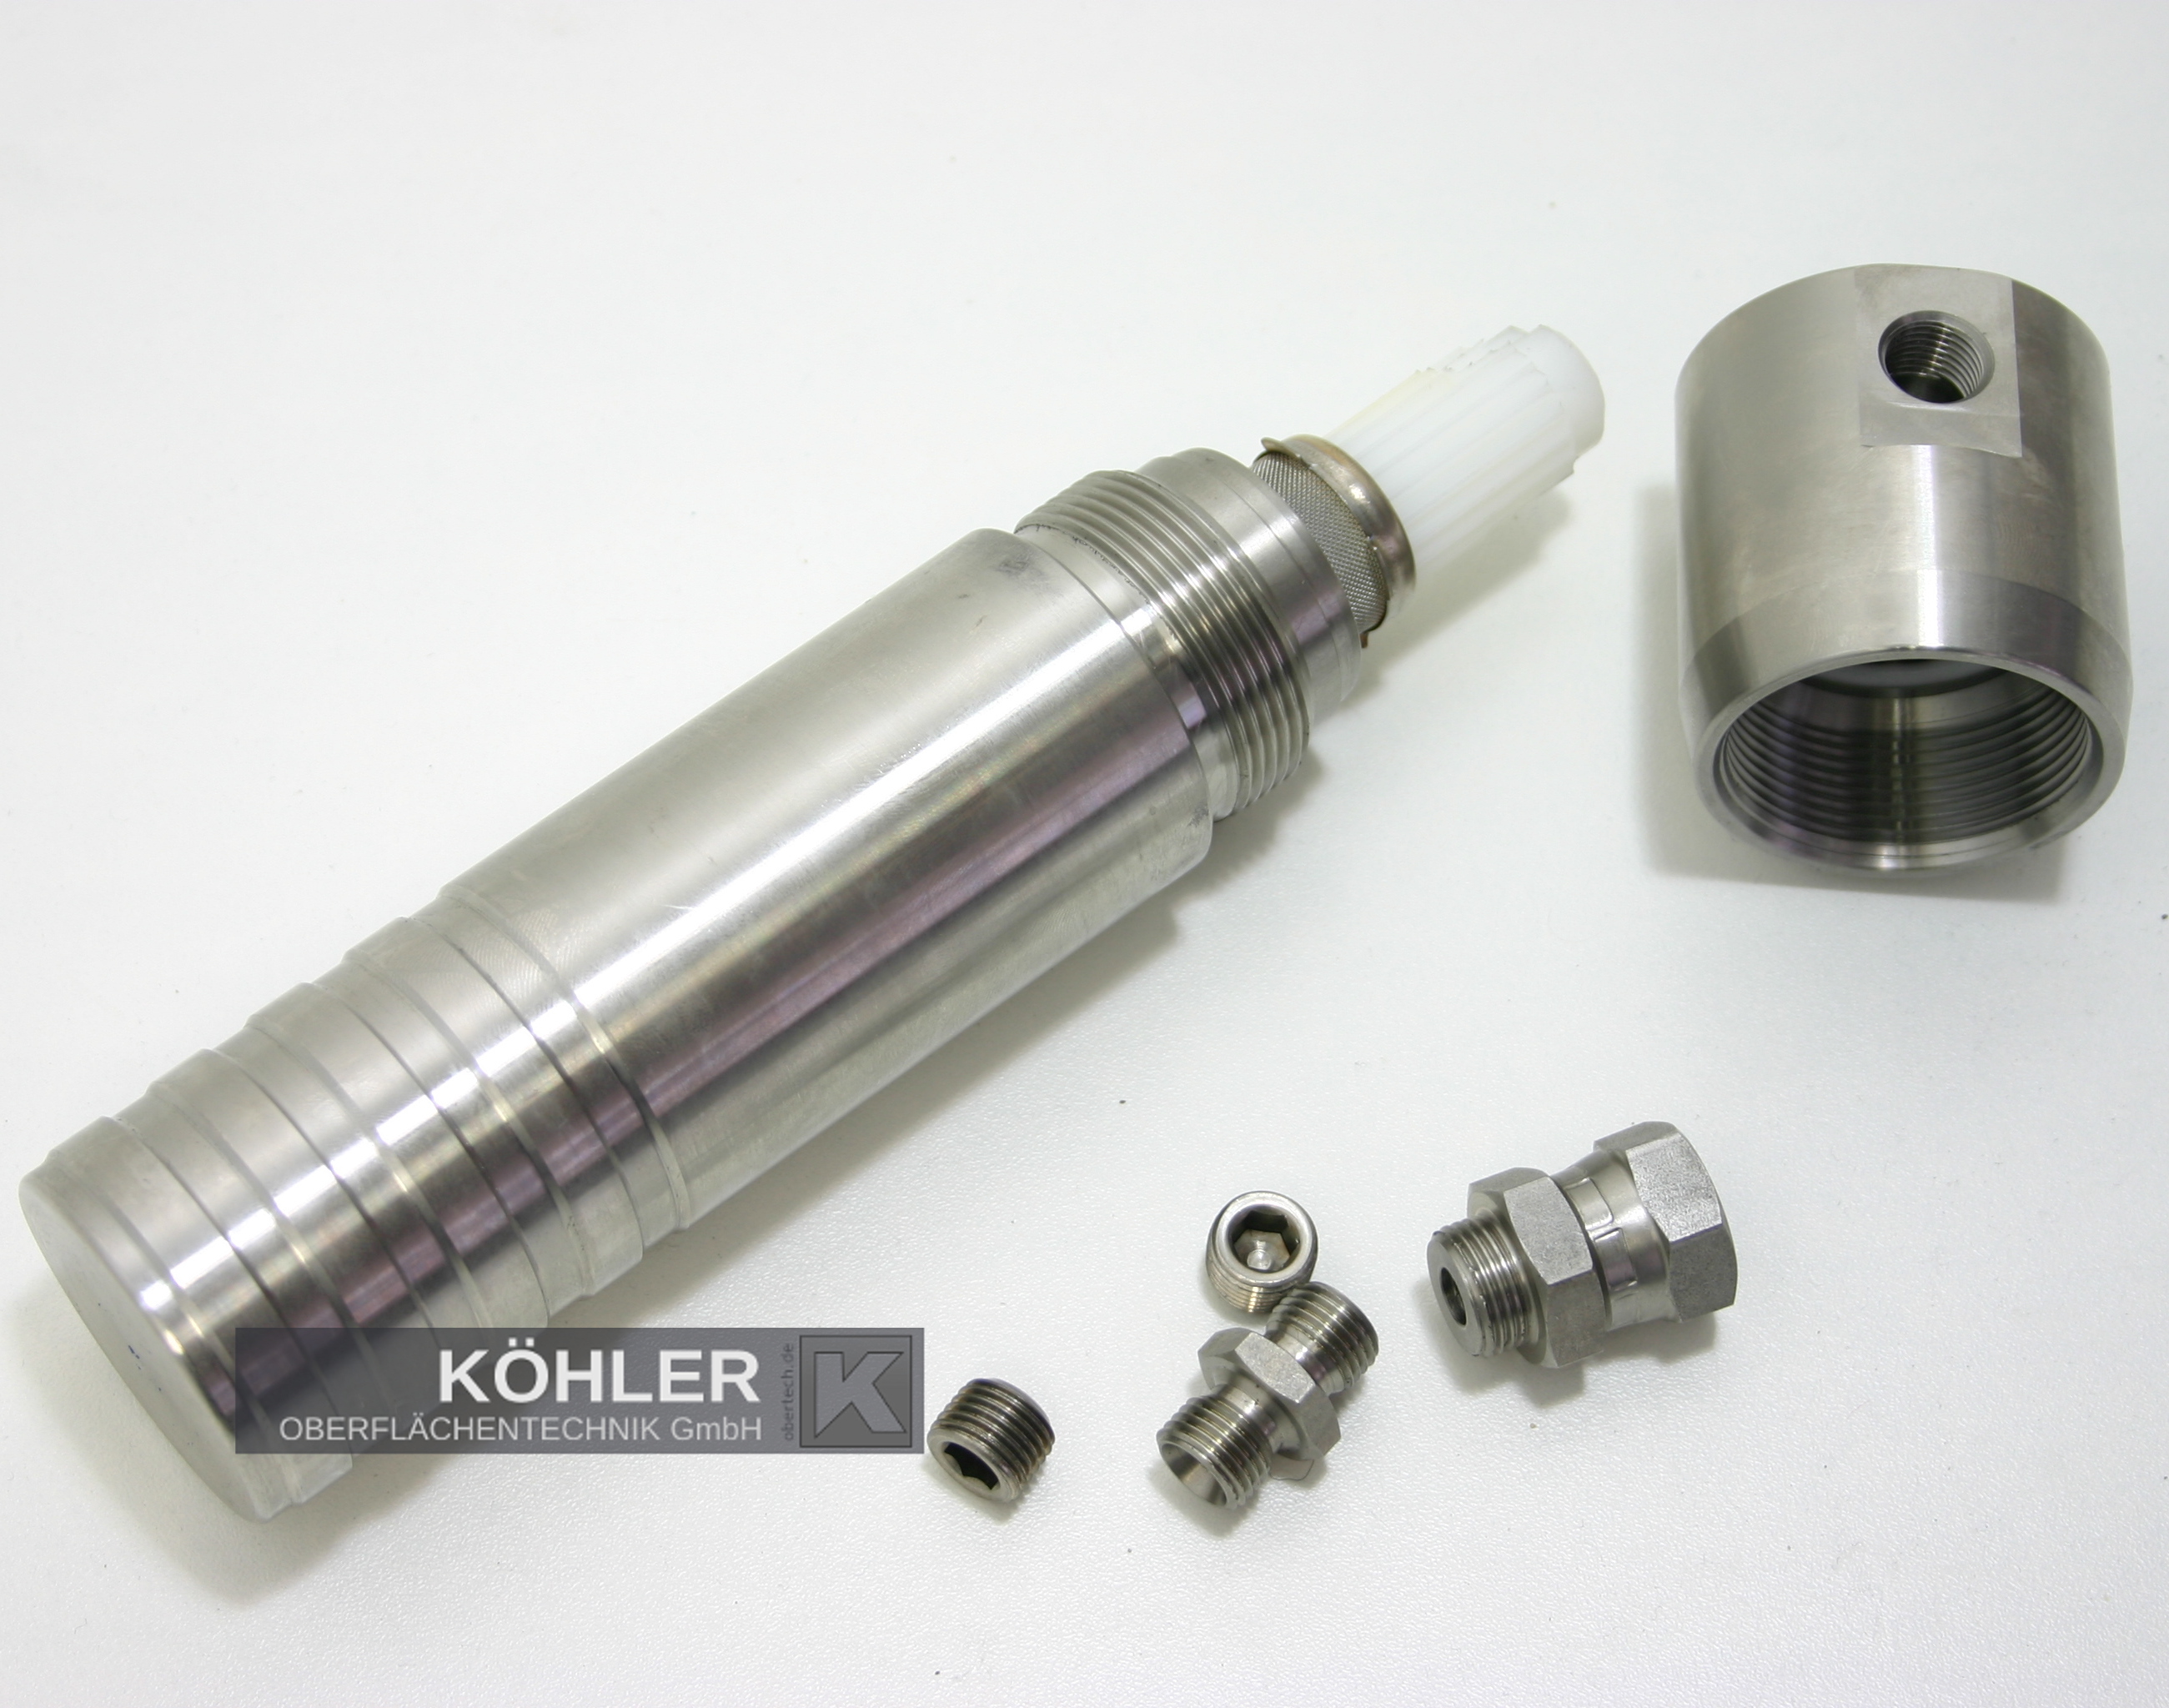 Filtereinheit für Airlessgeräte (Edelstahl), K 570 Stainless steel